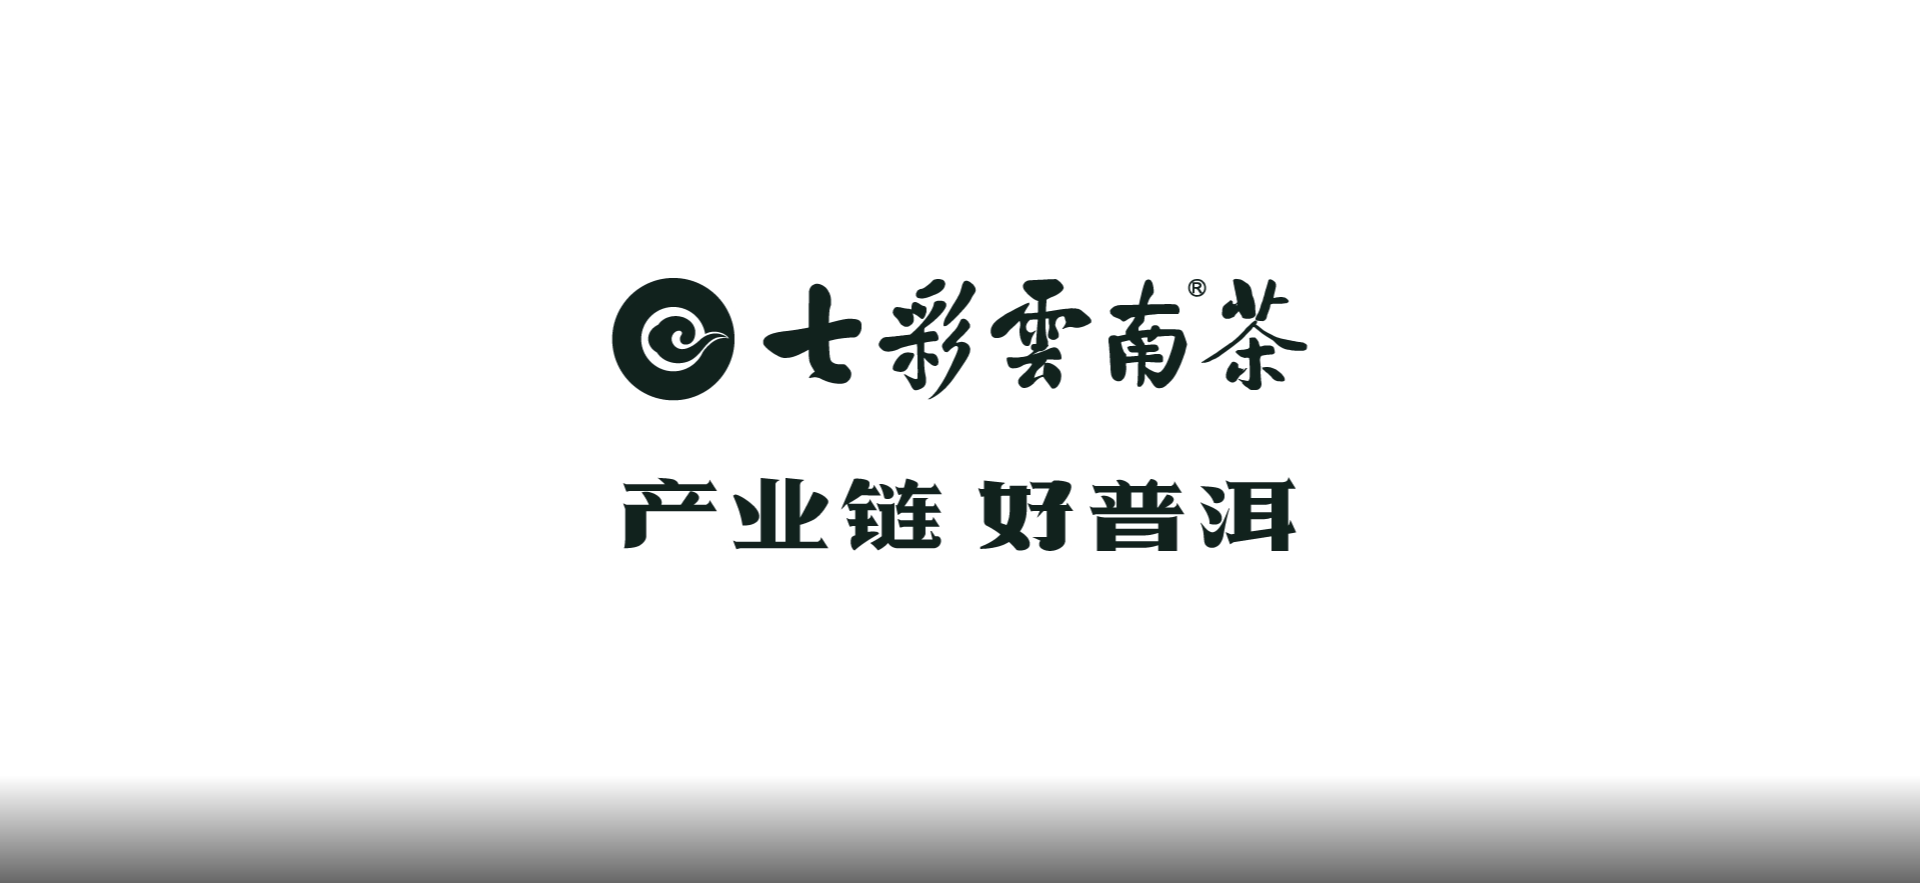 七彩云南®茶——品牌长画卷背后的创作故事（四）